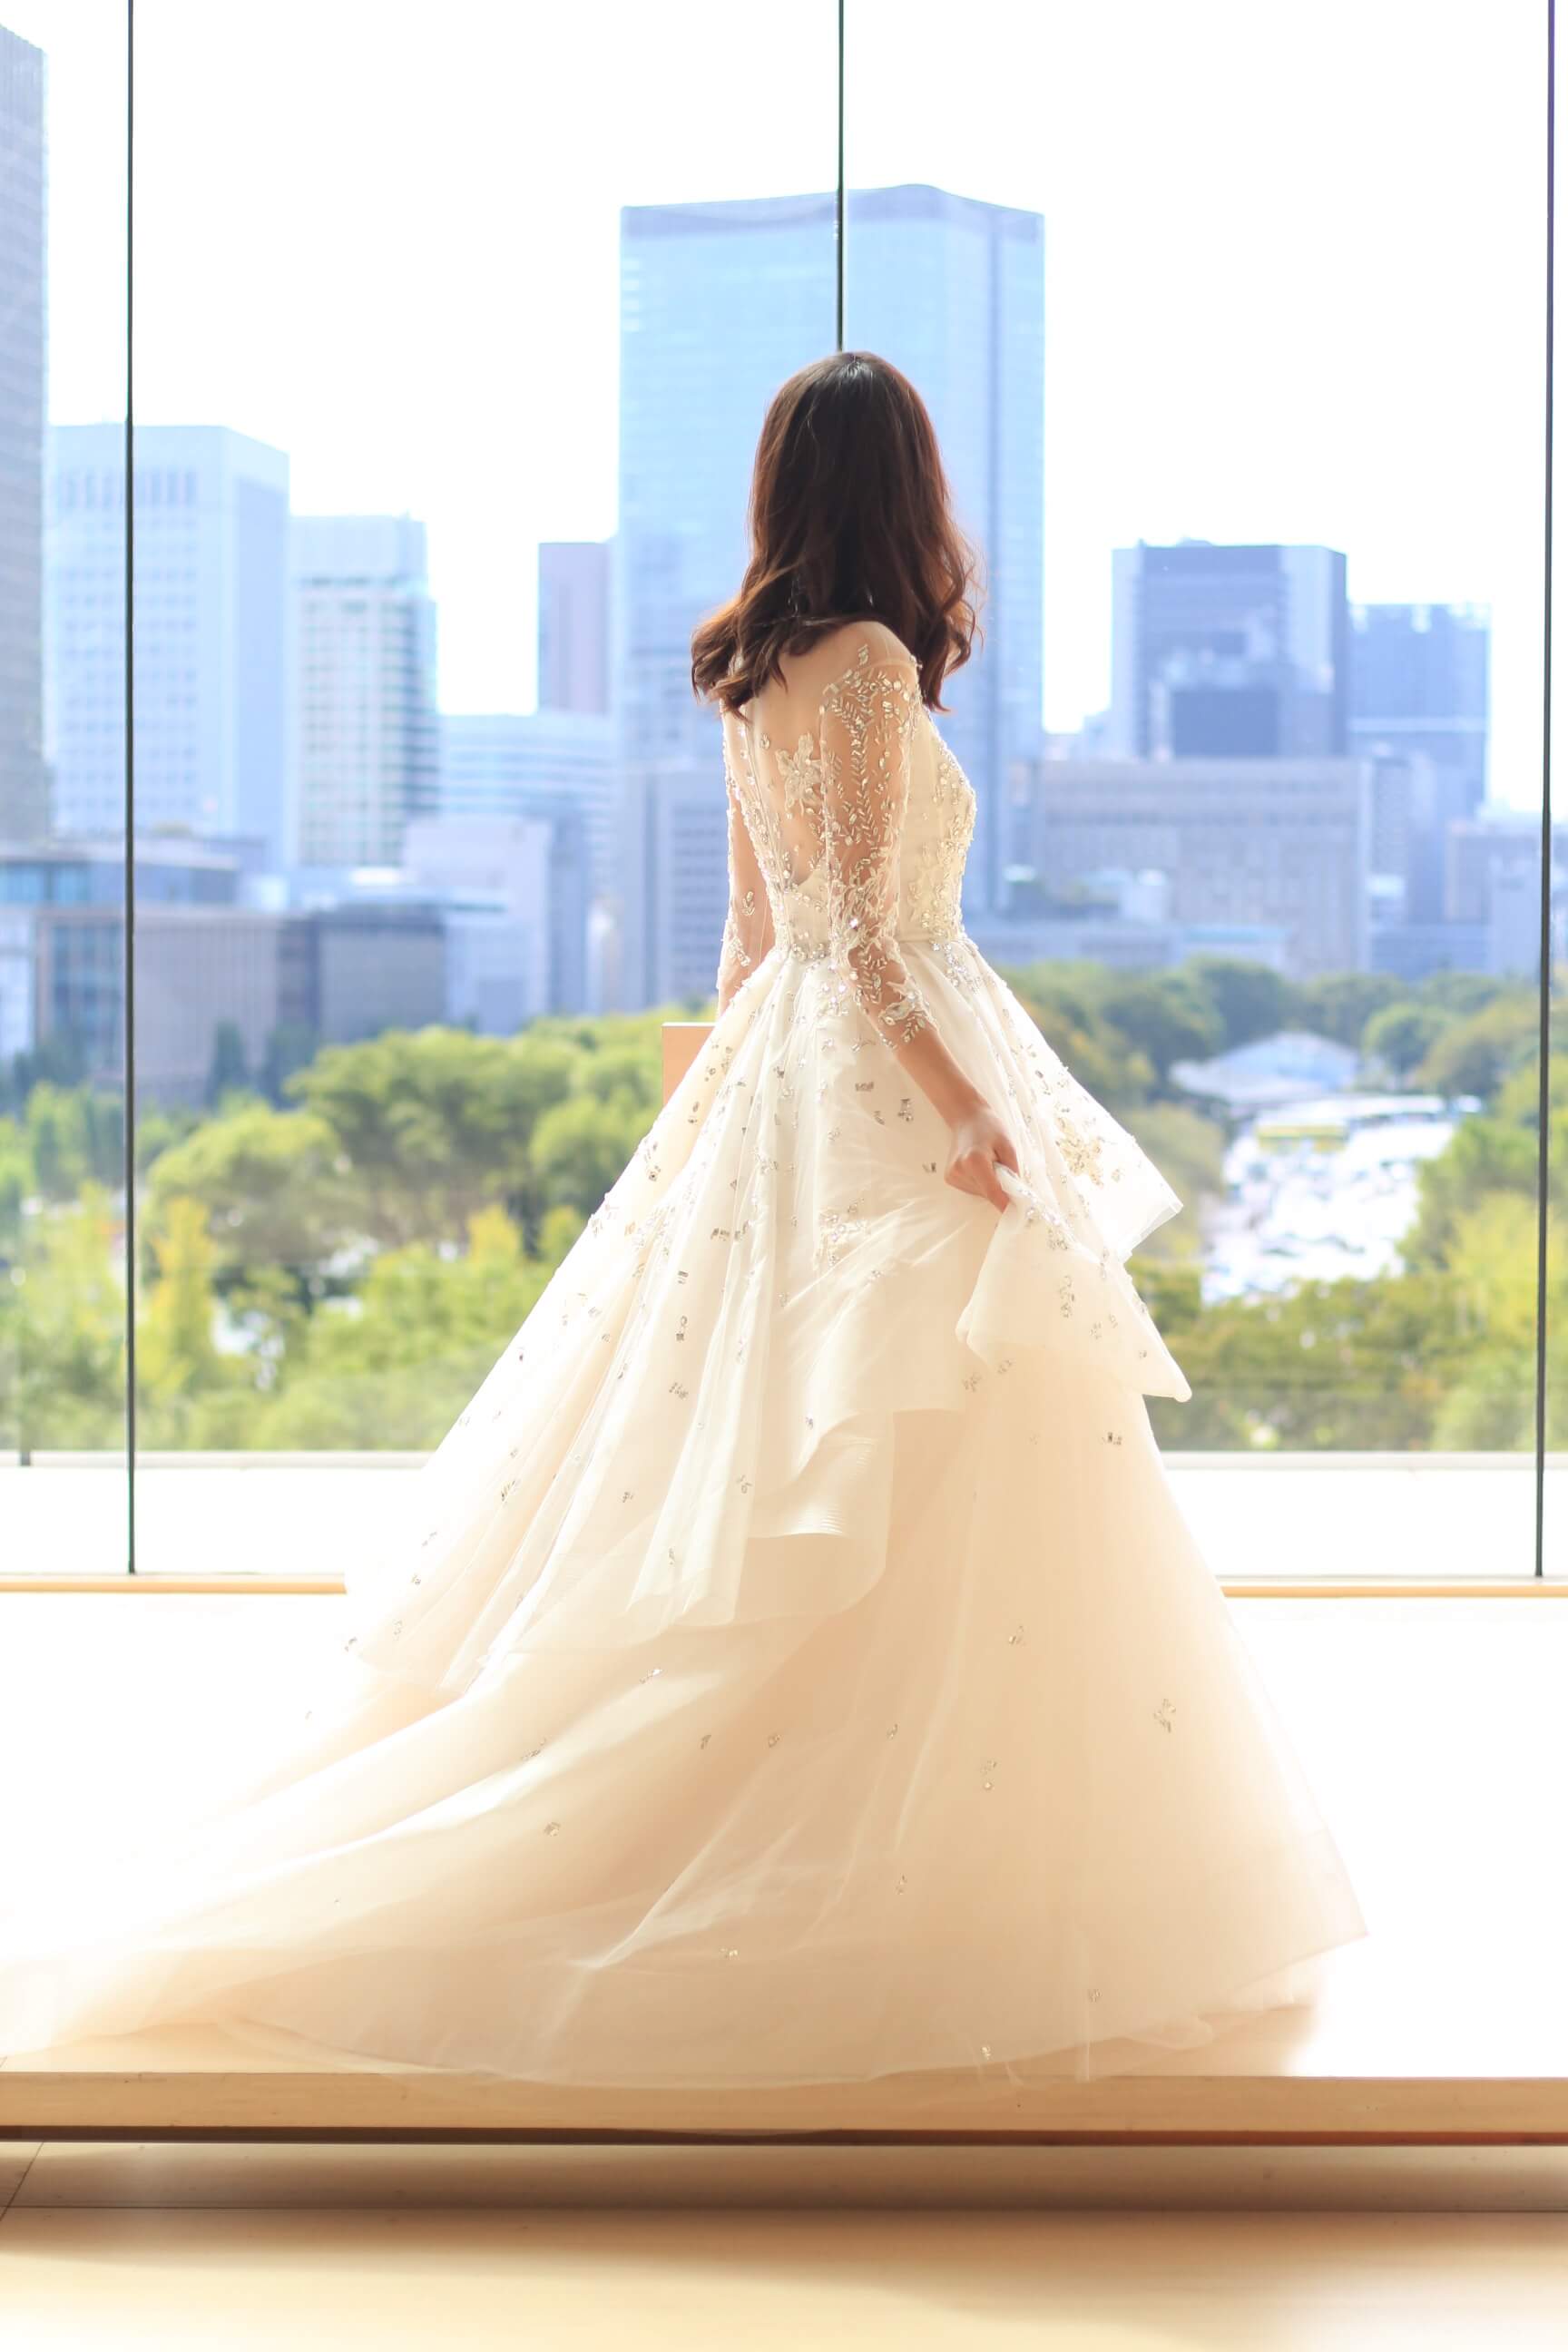 パレスホテル東京に合うモニークルイリエの新作ドレス